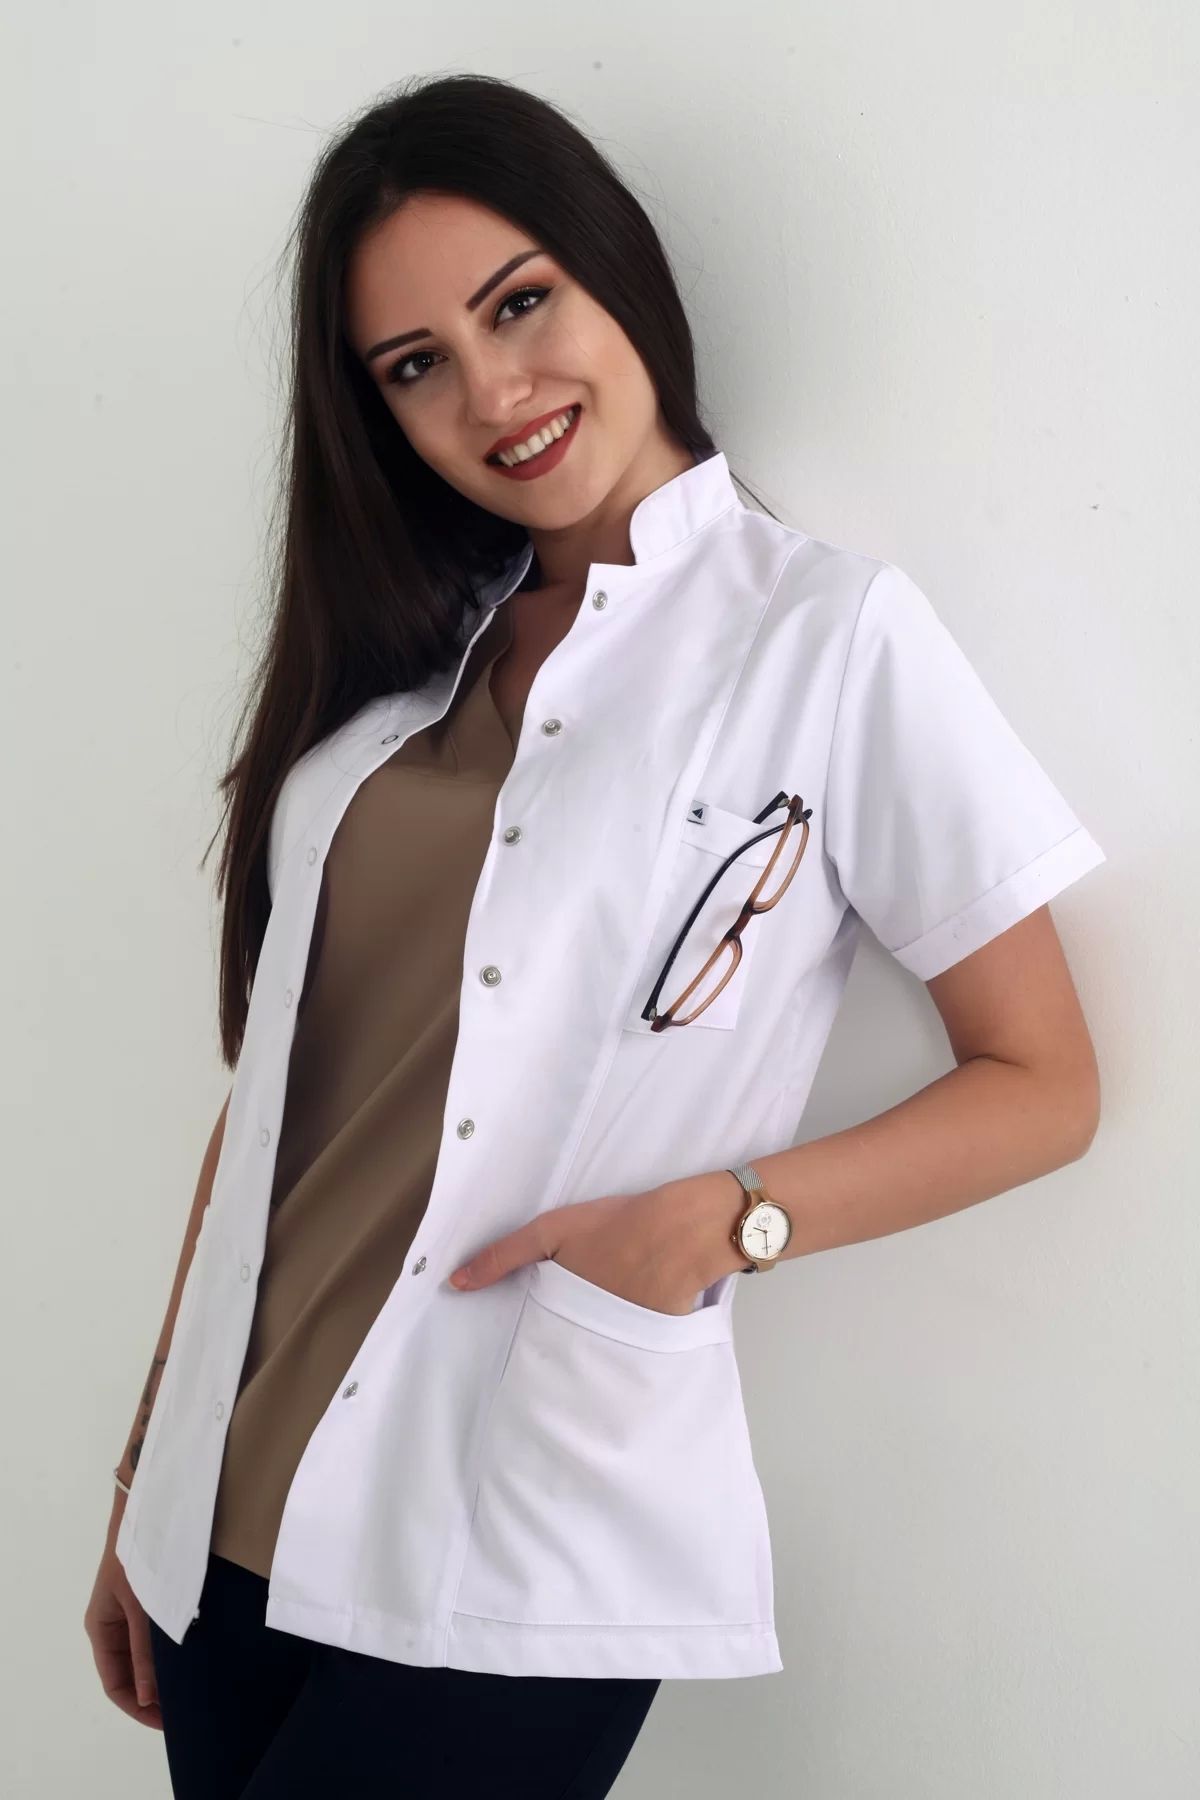 DENİZ İŞ Deniz Iş Kıyafetleri Kadın Kısakol Alpaka Kumaş Beyaz Renk Ceket Boy Hakim Yaka Iş Önlüğü